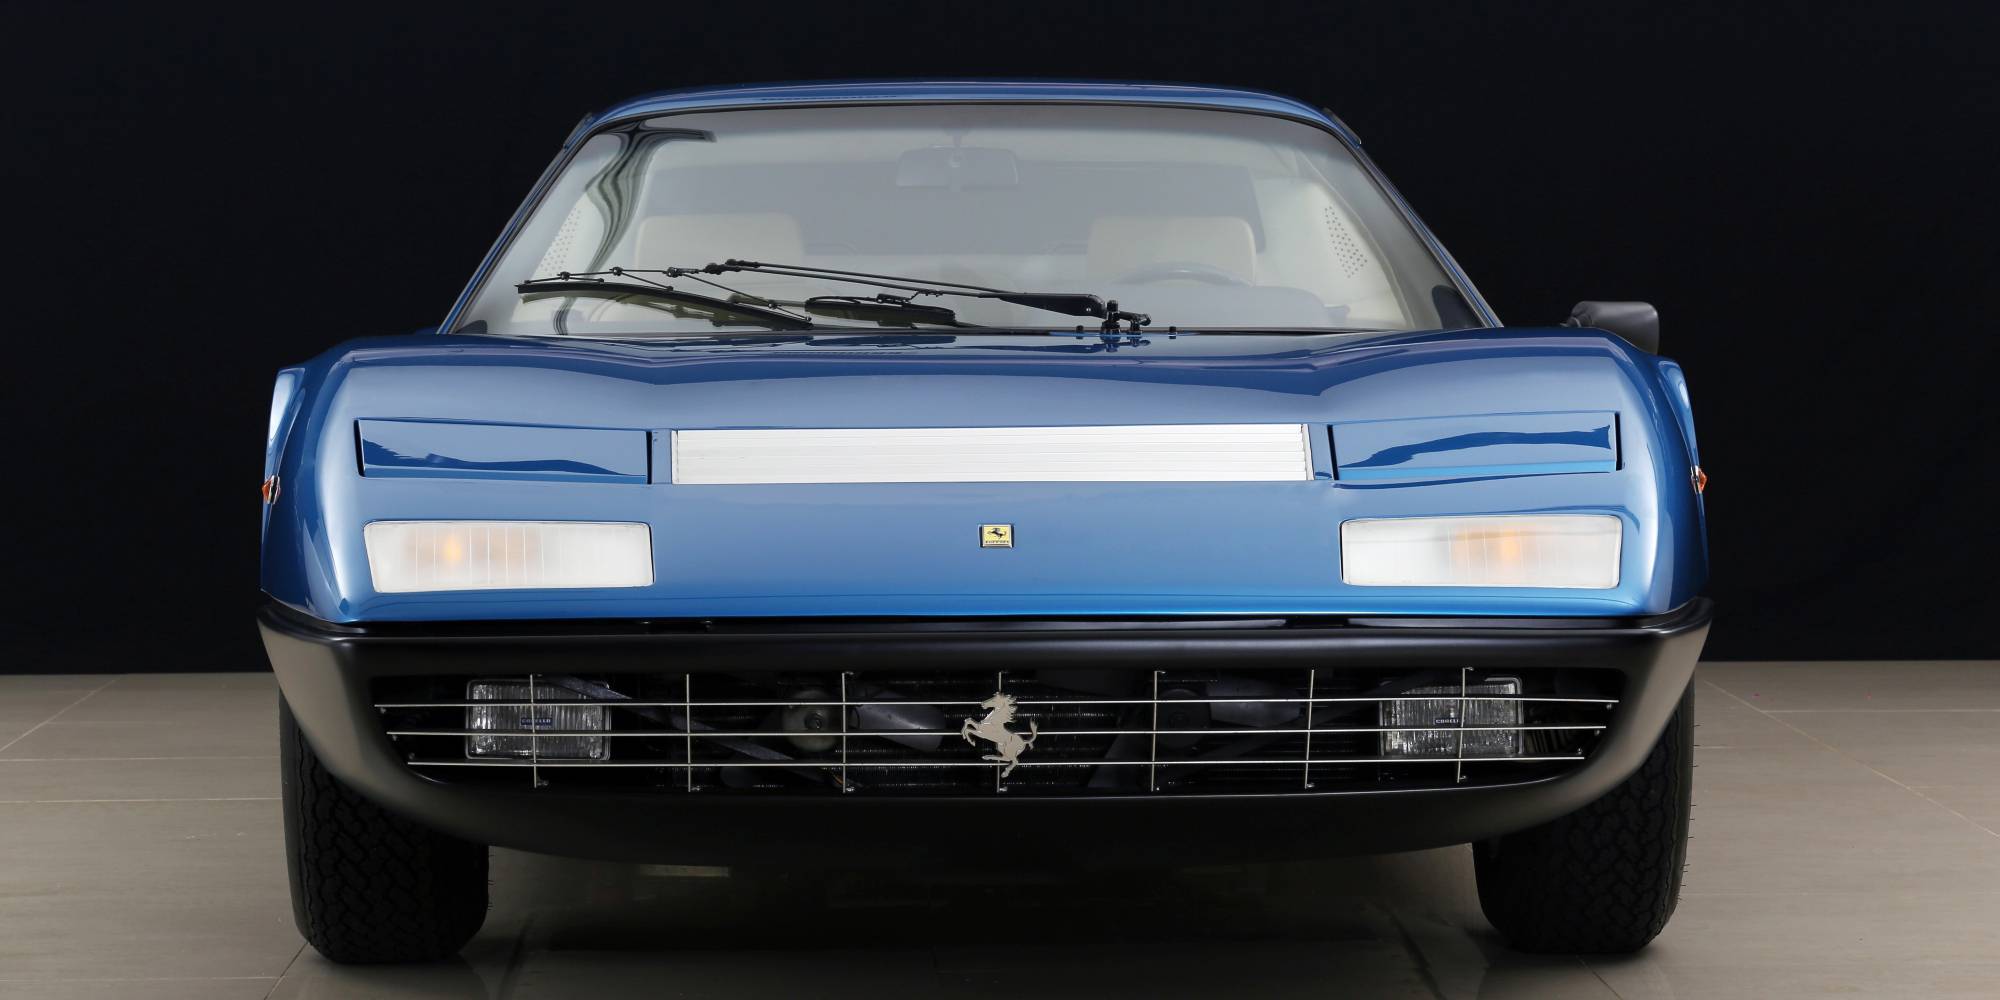 1974年式 フェラーリ 365 GT/4 BB|ビンゴスポーツ/希少車、 絶版車、高級車の販売・買取。